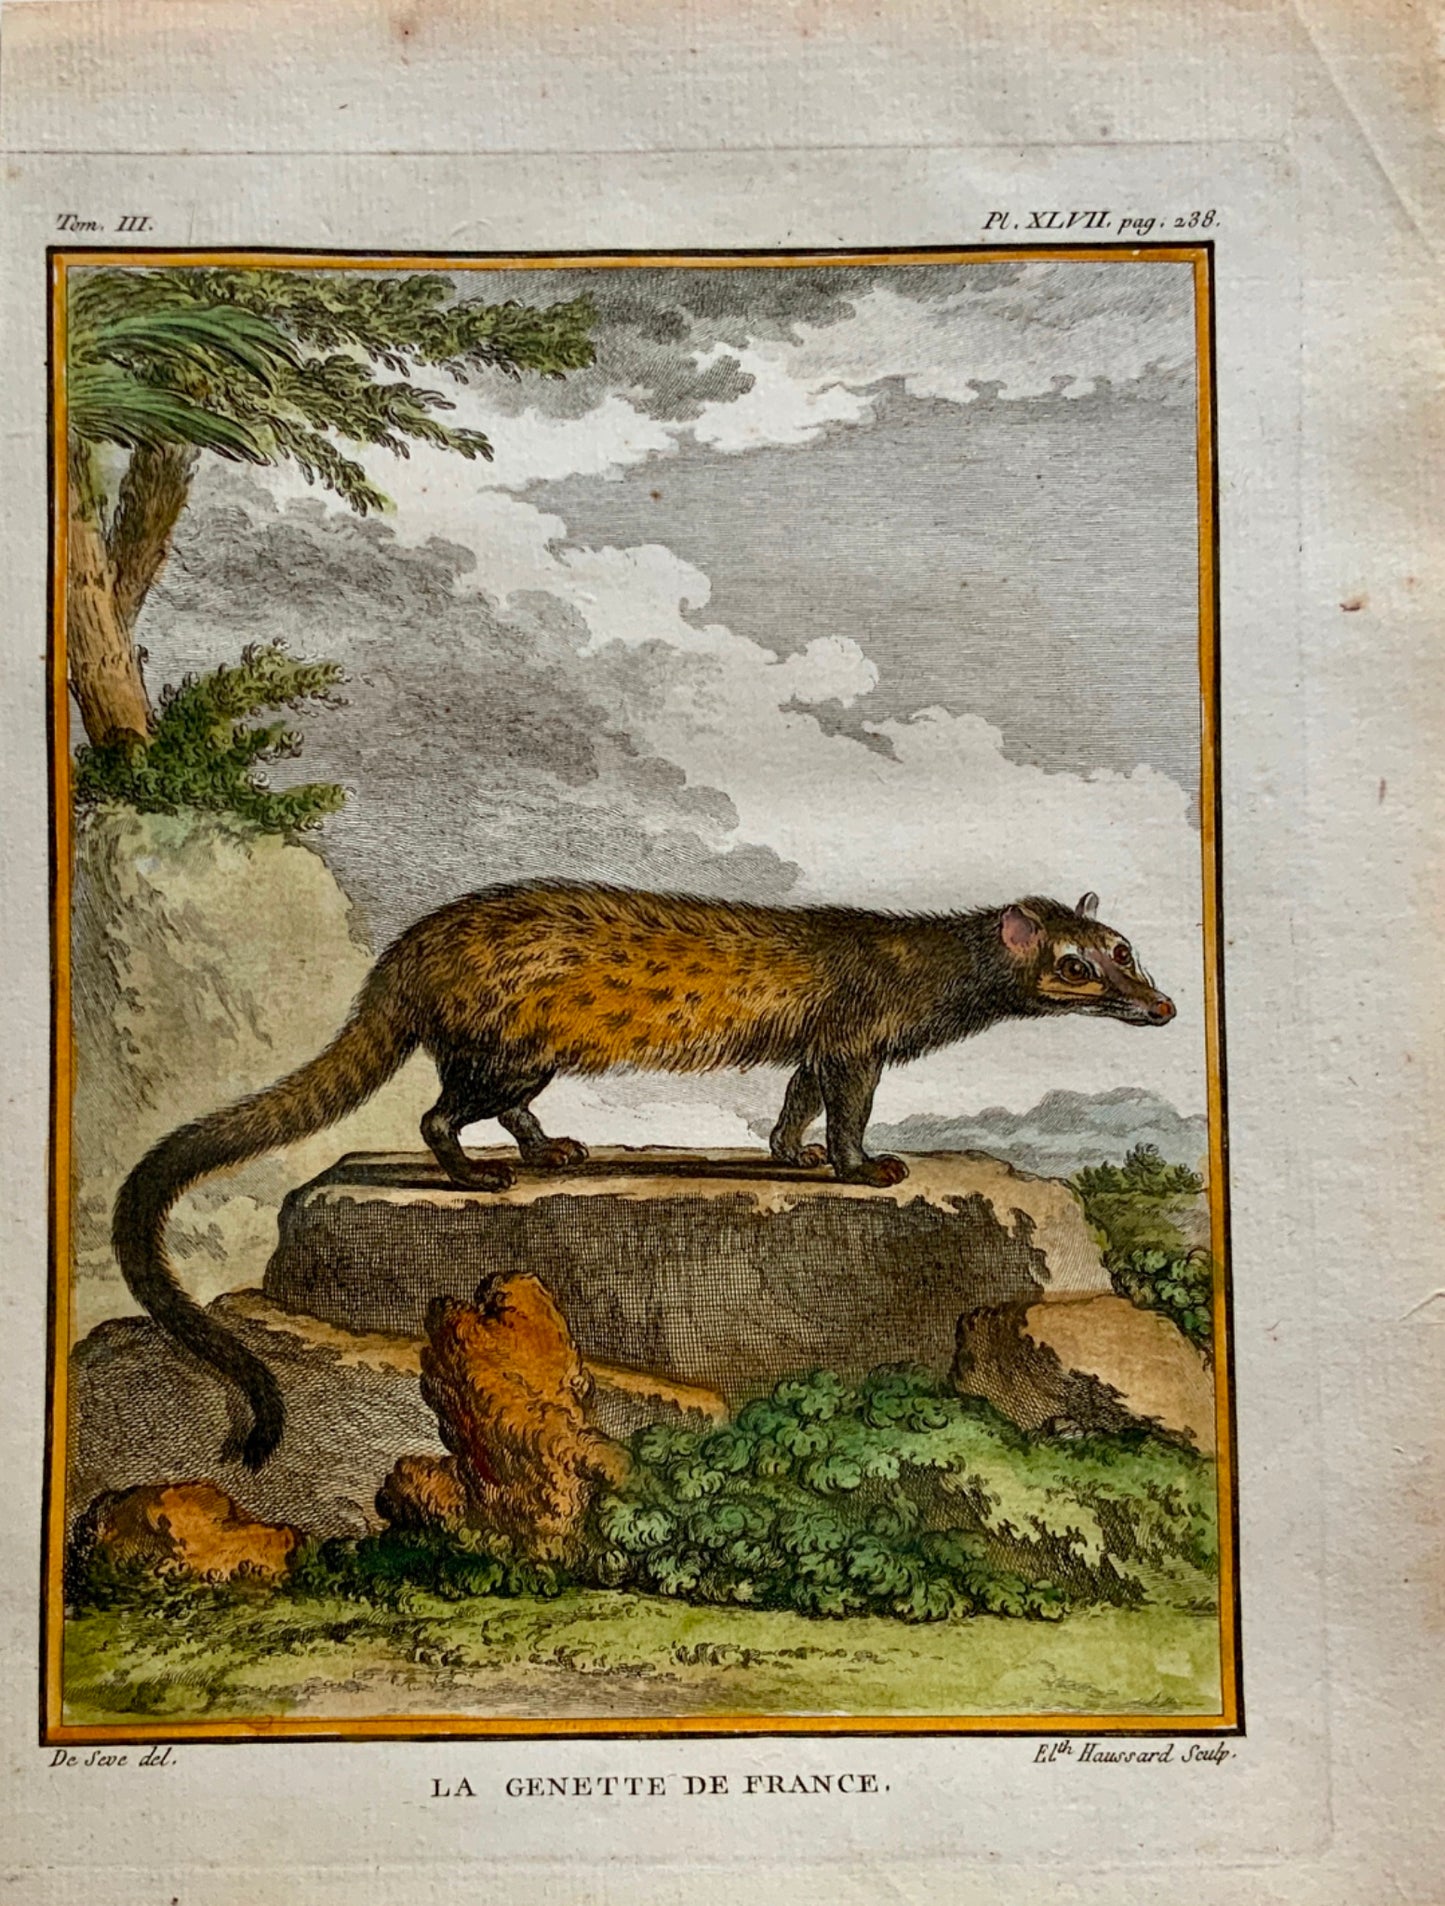 1779 Haussard; J. de Seve - French GENET - Mammal - 4to engraving